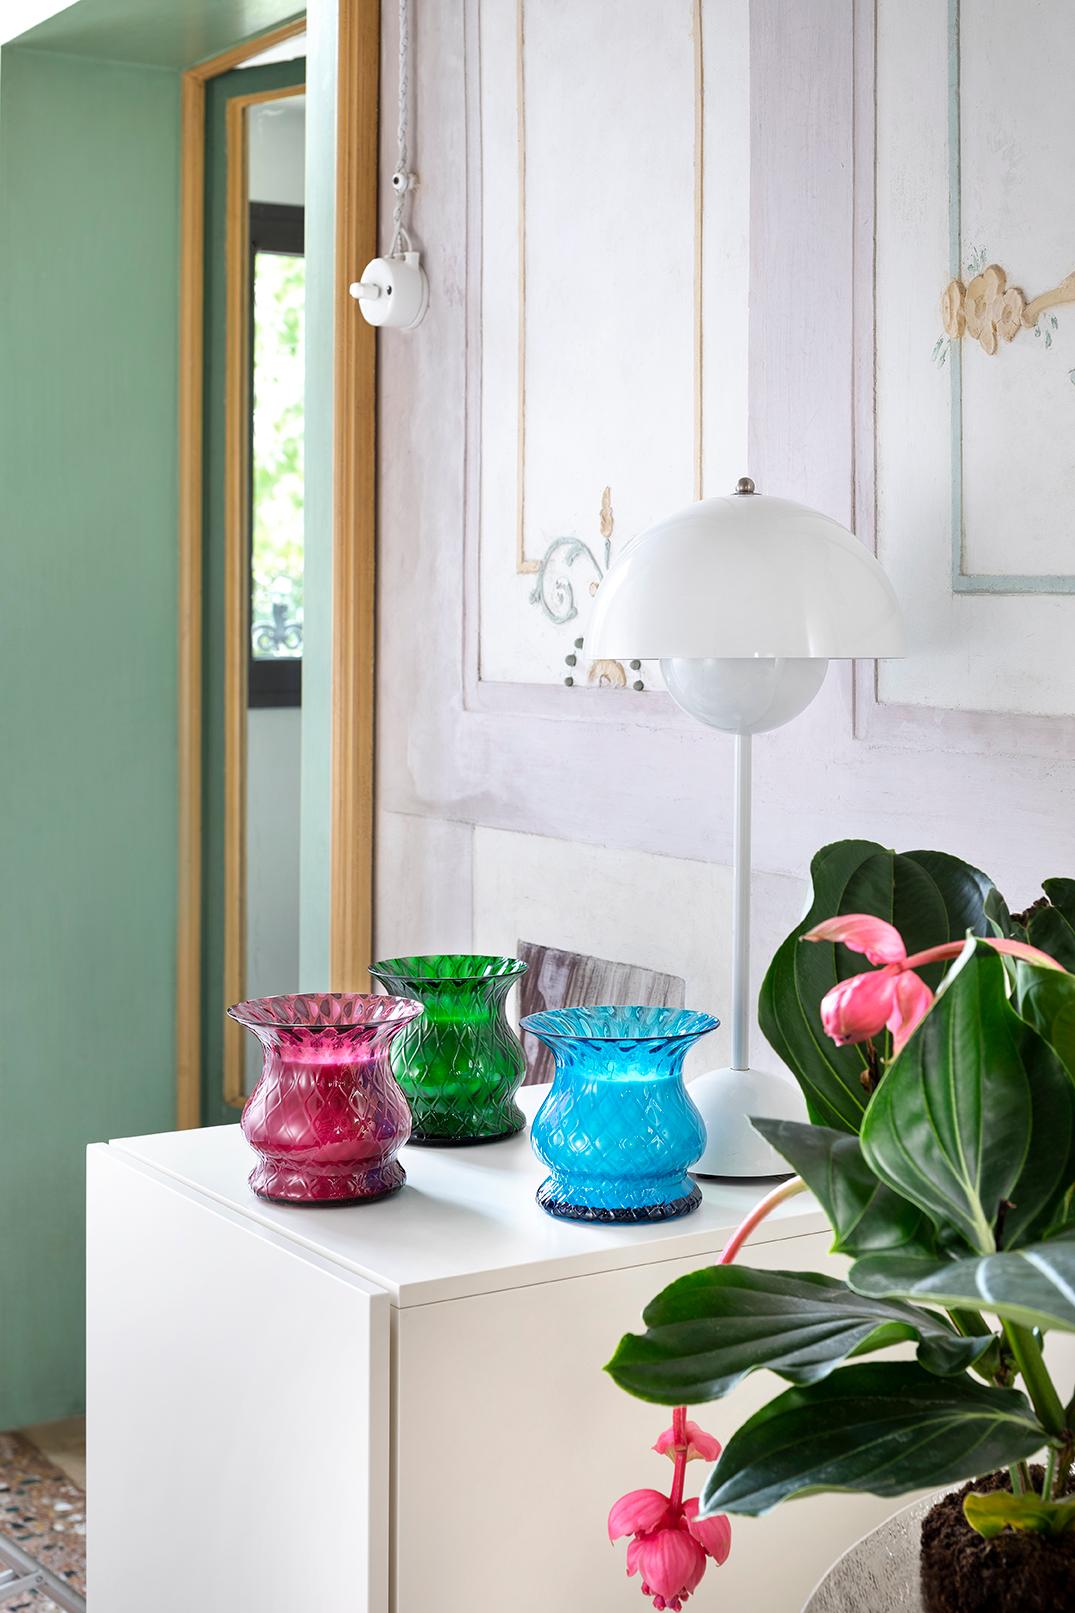 Das intensive Blau des Murano-Glases schafft eine magnetische Vase mit einem akzentuierten Relief aus Makramee-Techniken, eine beliebte venezianische Signatur.
Artistics-Glas, das mit einer besonderen Textur versehen ist, die der Oberfläche einen